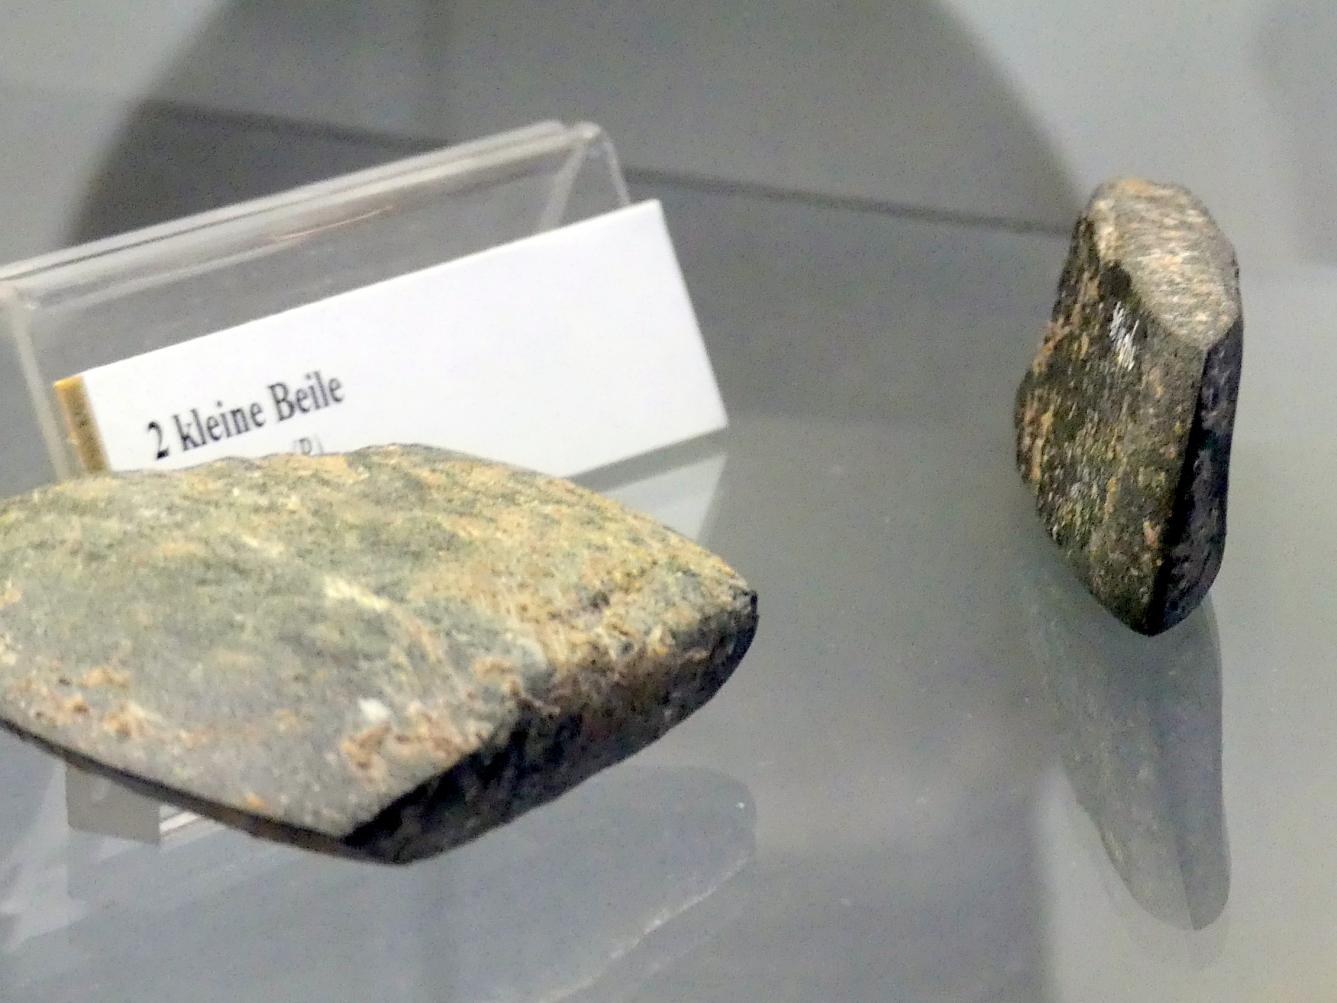 2 kleine Beile, Endneolithikum, 2800 - 1700 v. Chr., Bild 1/5